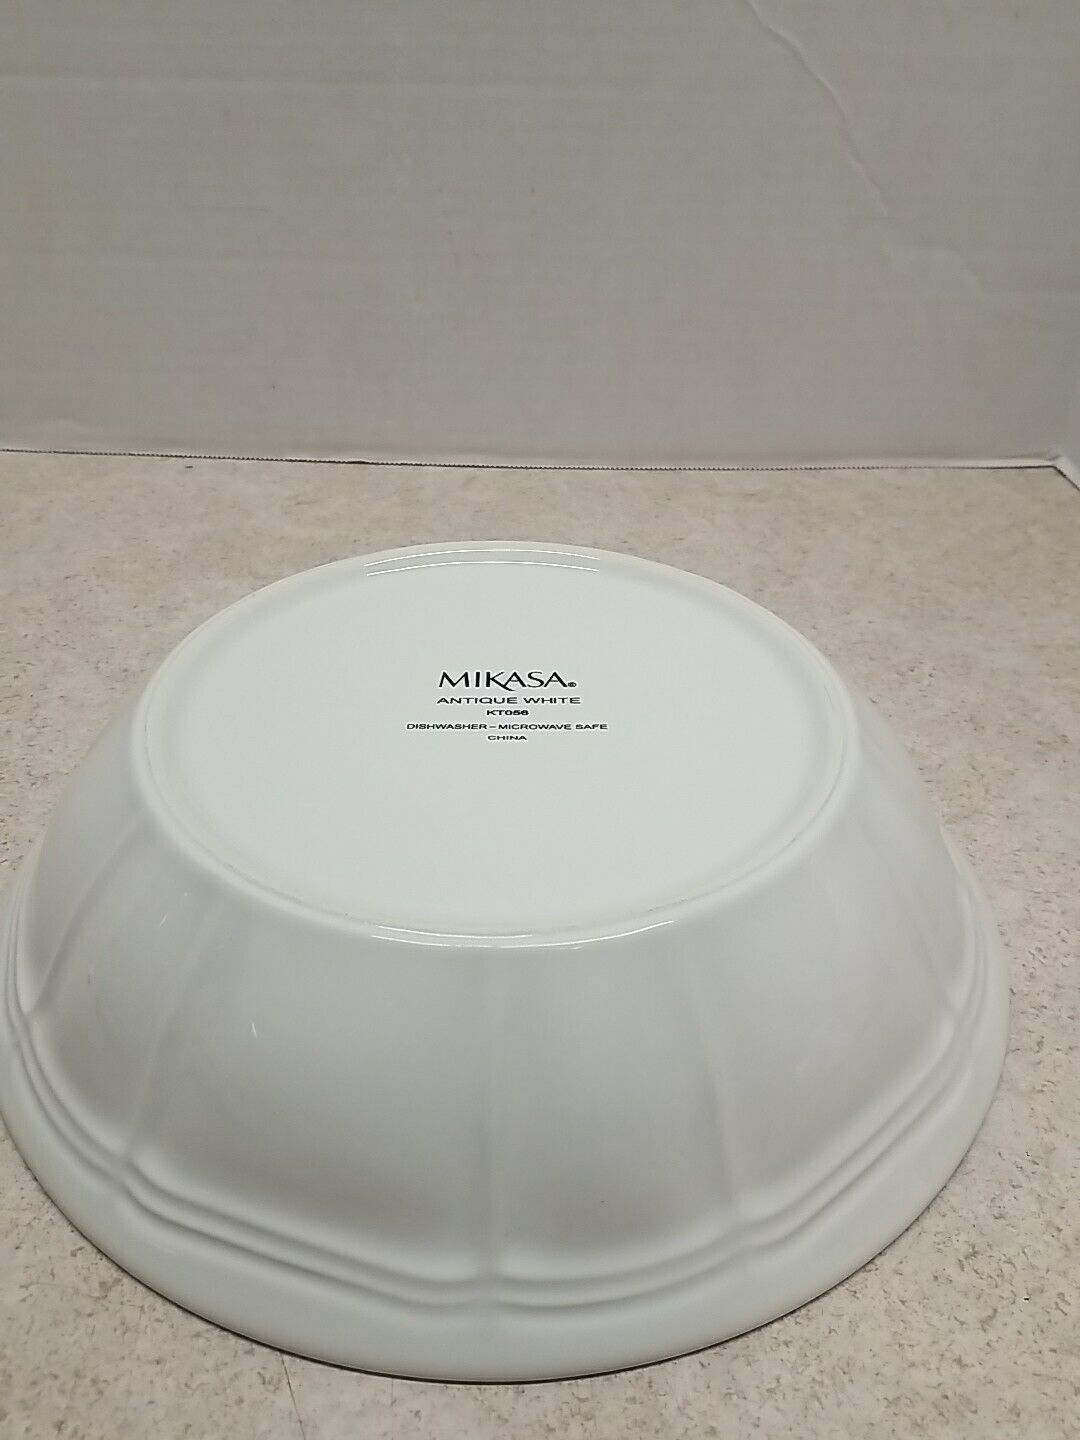 Mikasa Antique White  Pasta Bowl 9 5/8